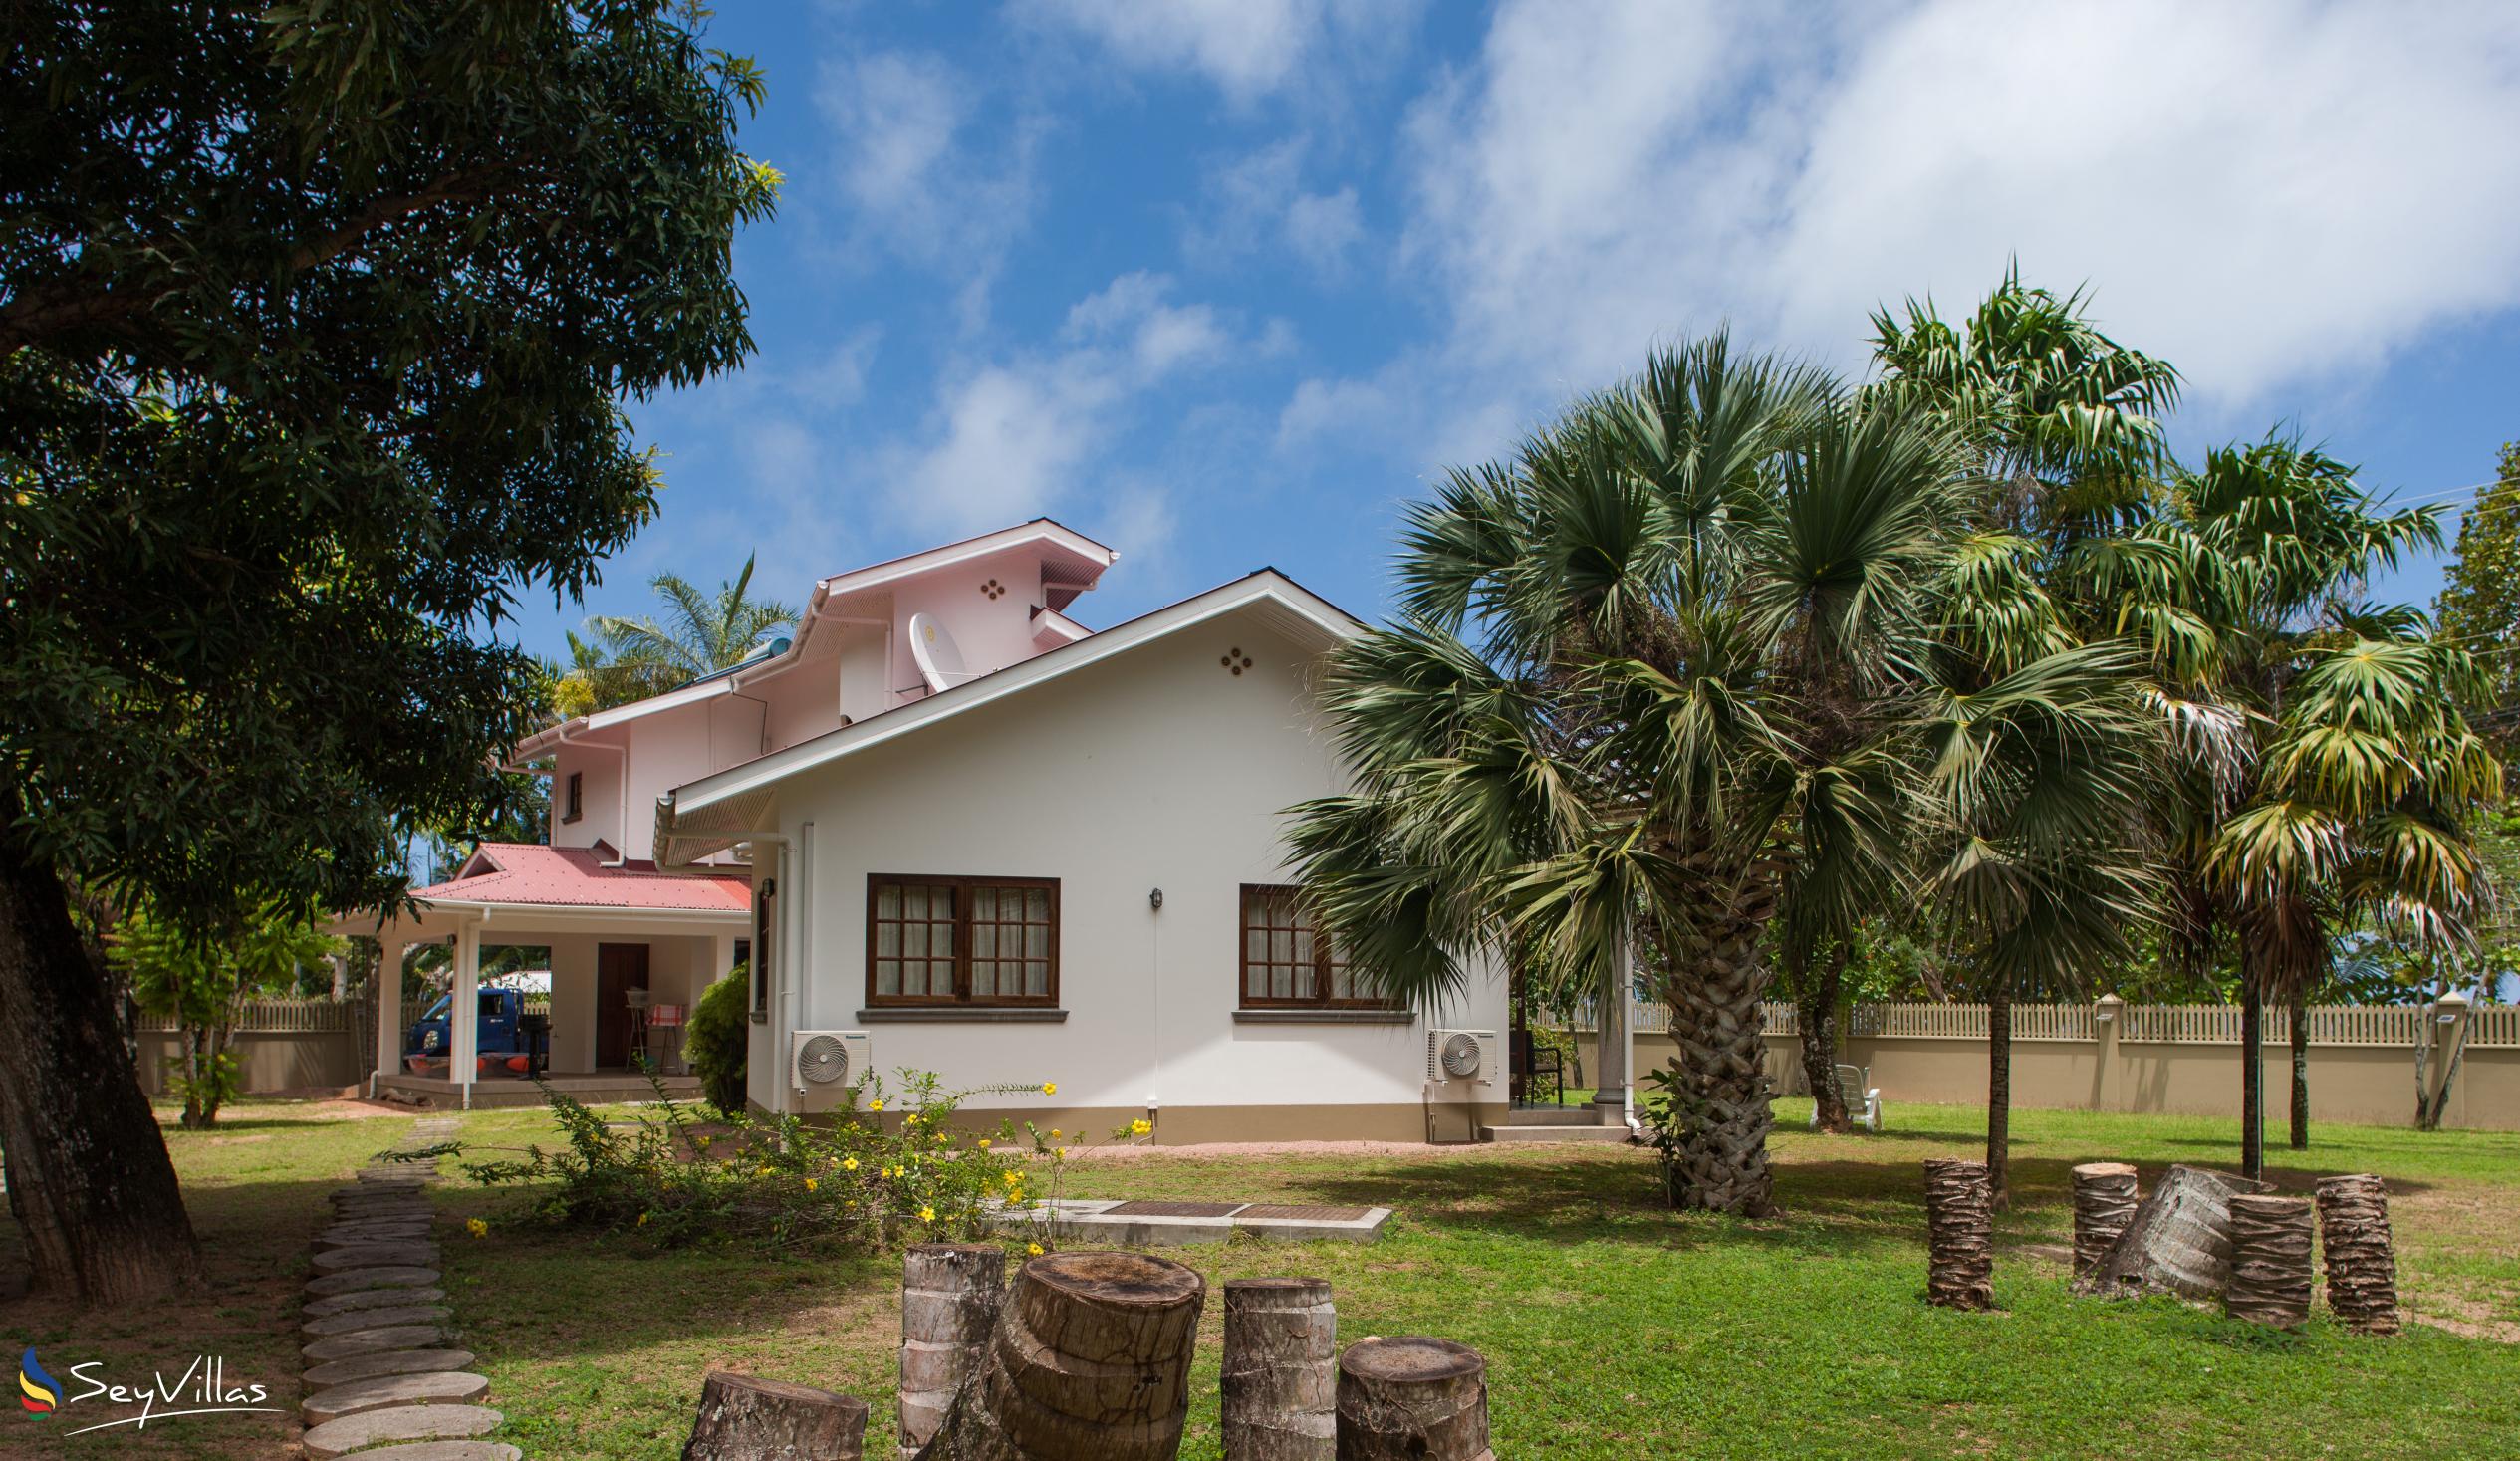 Foto 3: Villa Saint Sauveur - Aussenbereich - Praslin (Seychellen)